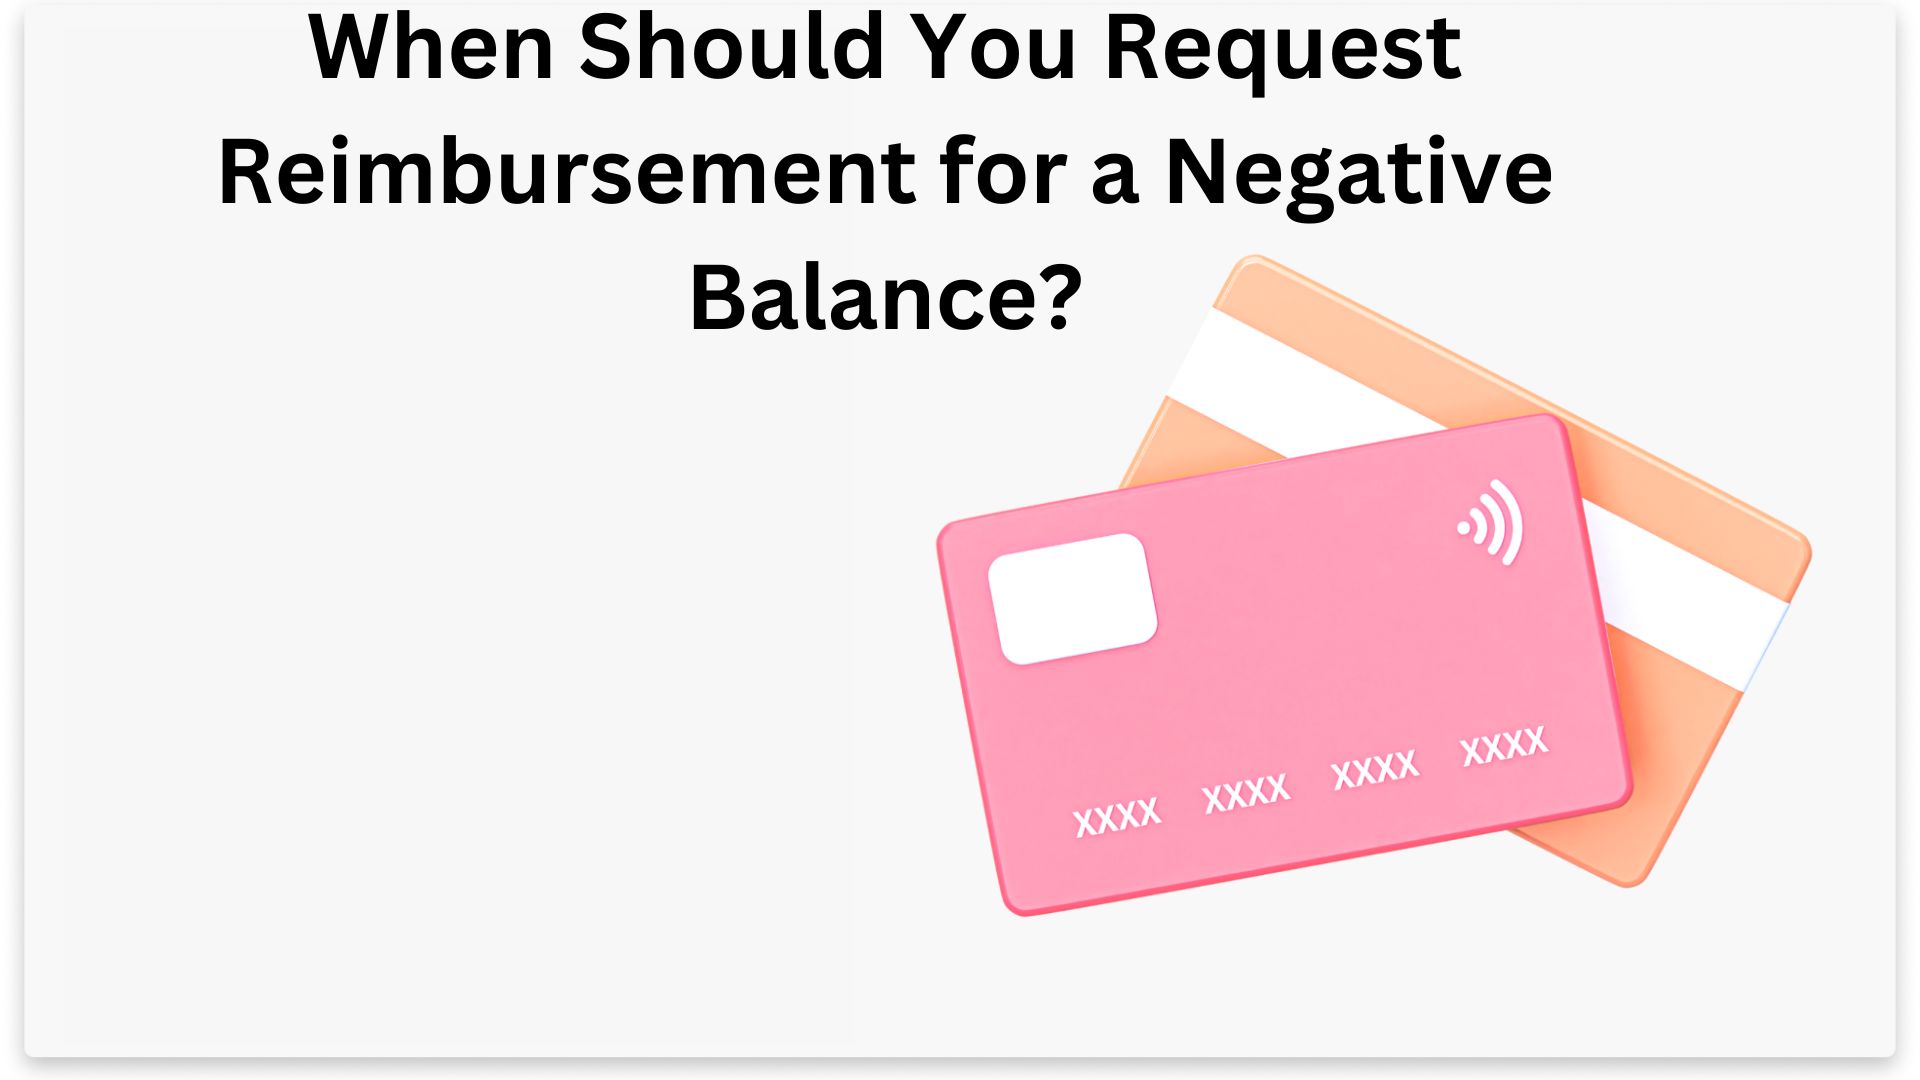 When Should You Request Reimbursement for a Negative Balance?